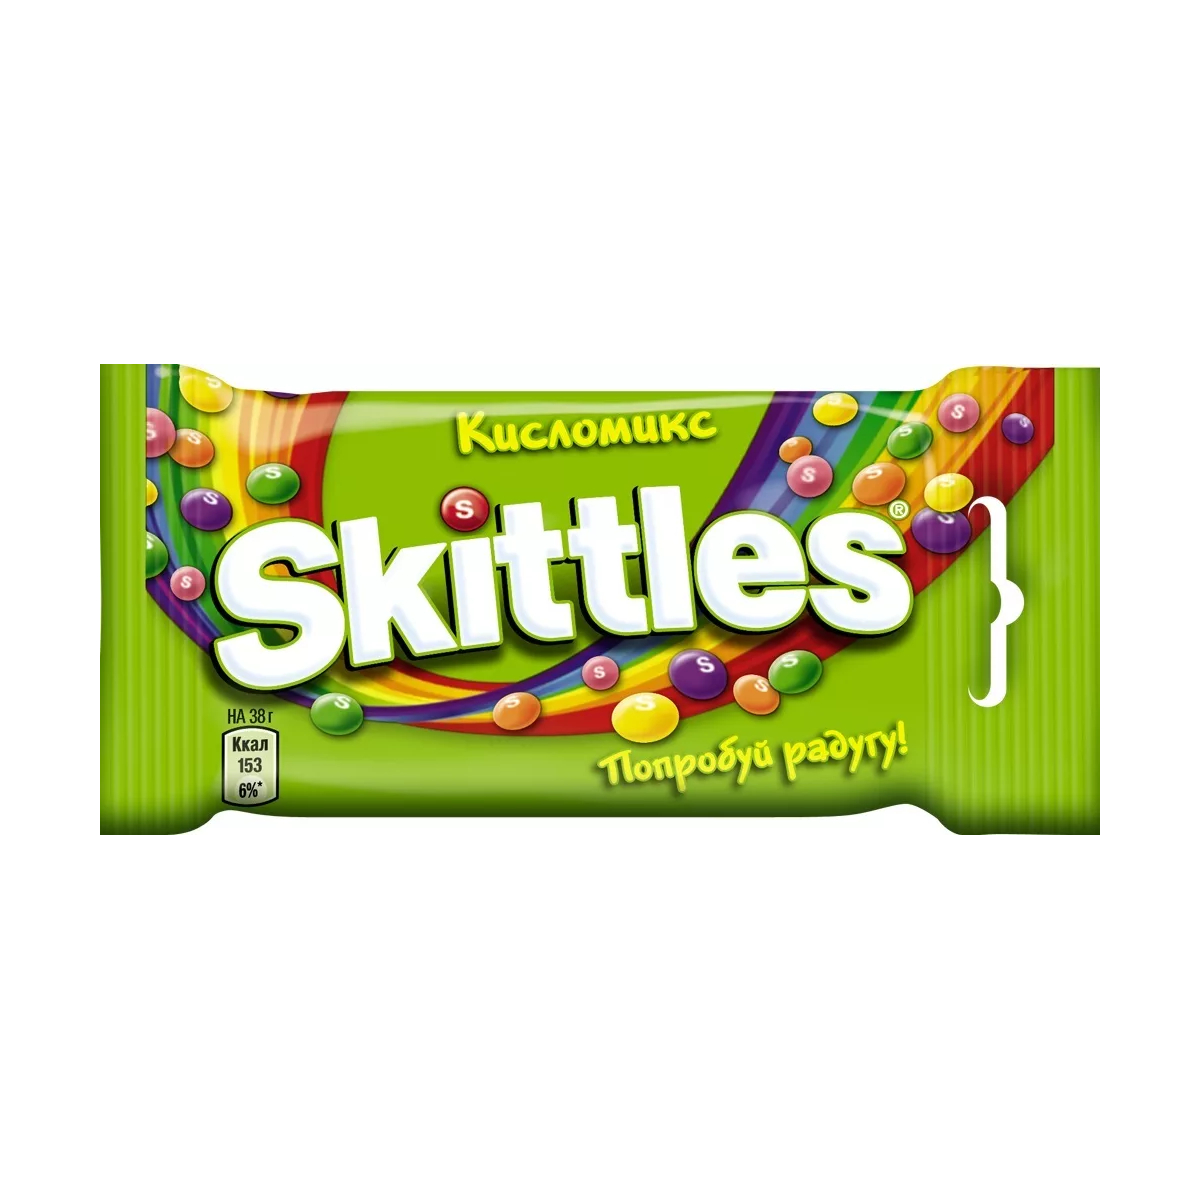 Драже Skittles Кисломикс, в разноцветной глазури, 38 г драже skittles фрукты в разноцветной глазури 38 г